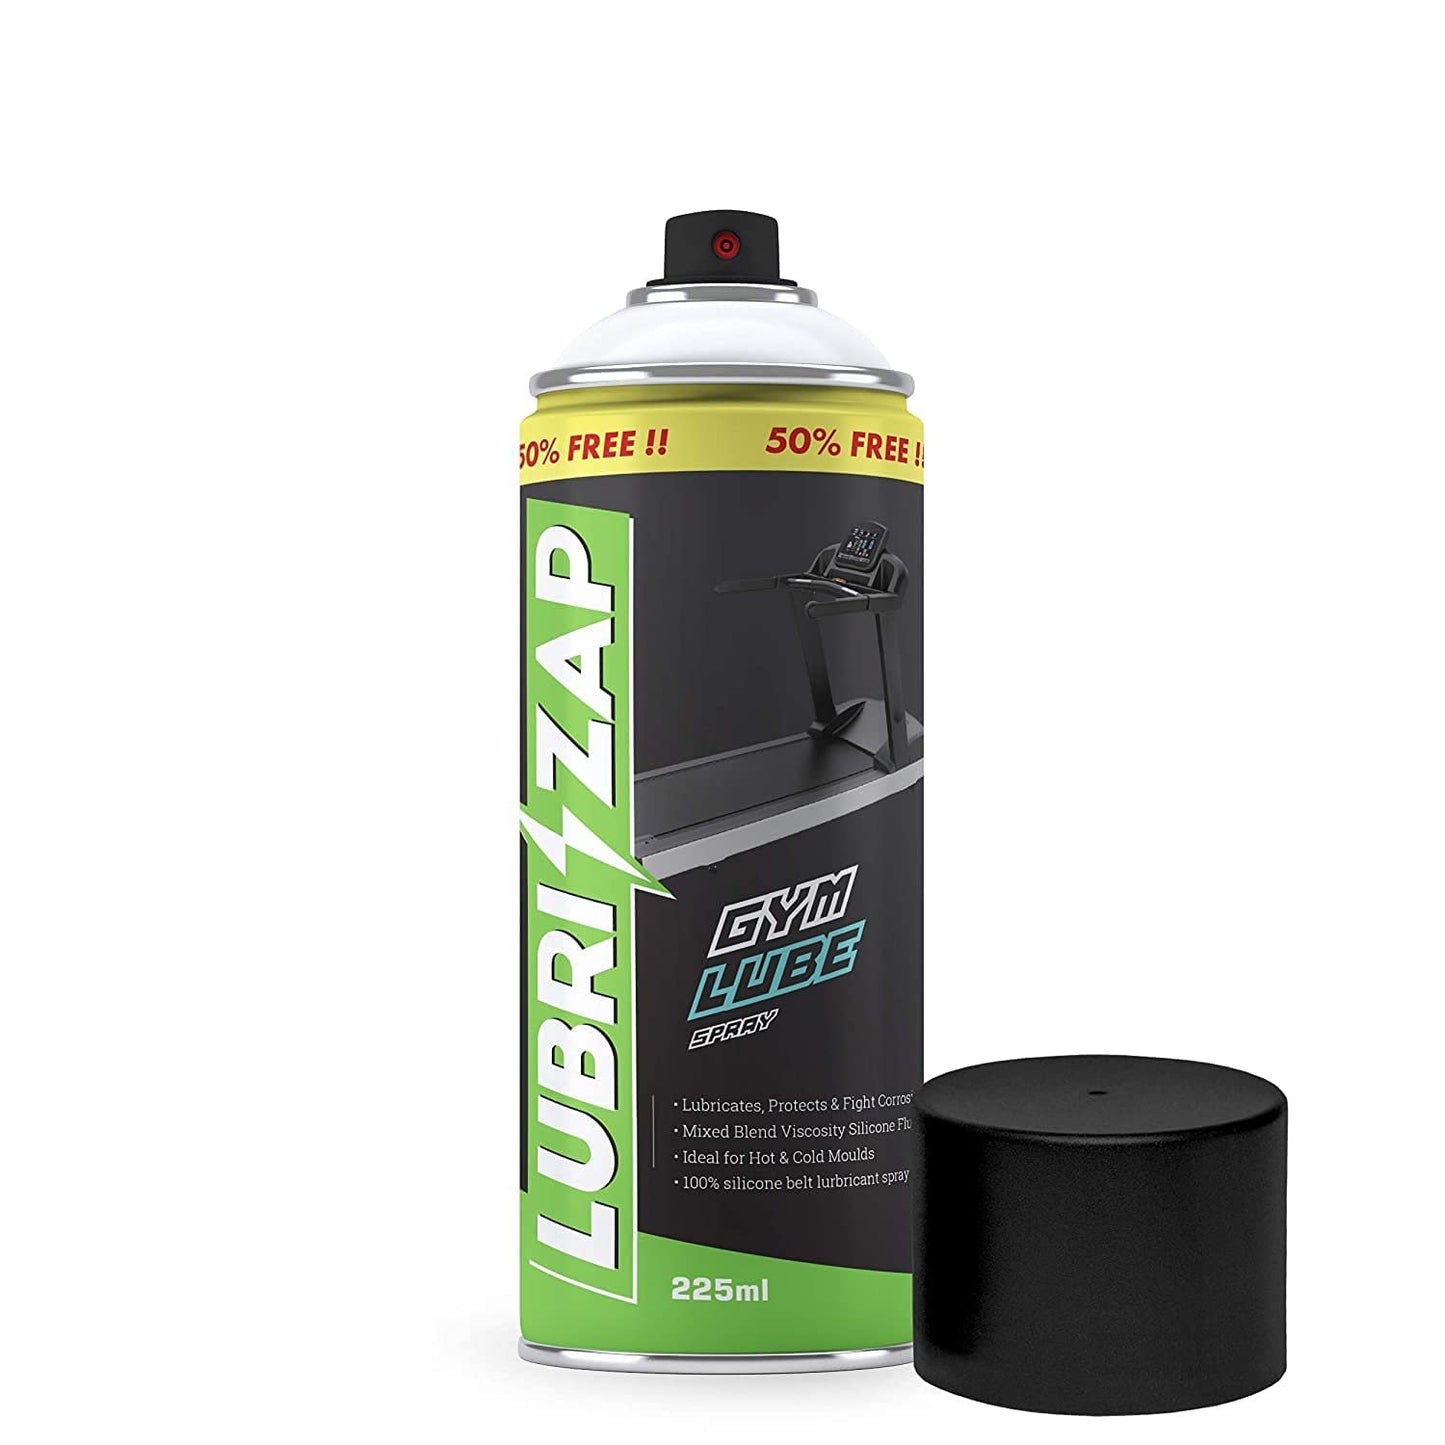 Lubrizap Gym Equipment Lubricant Spray - 225ml